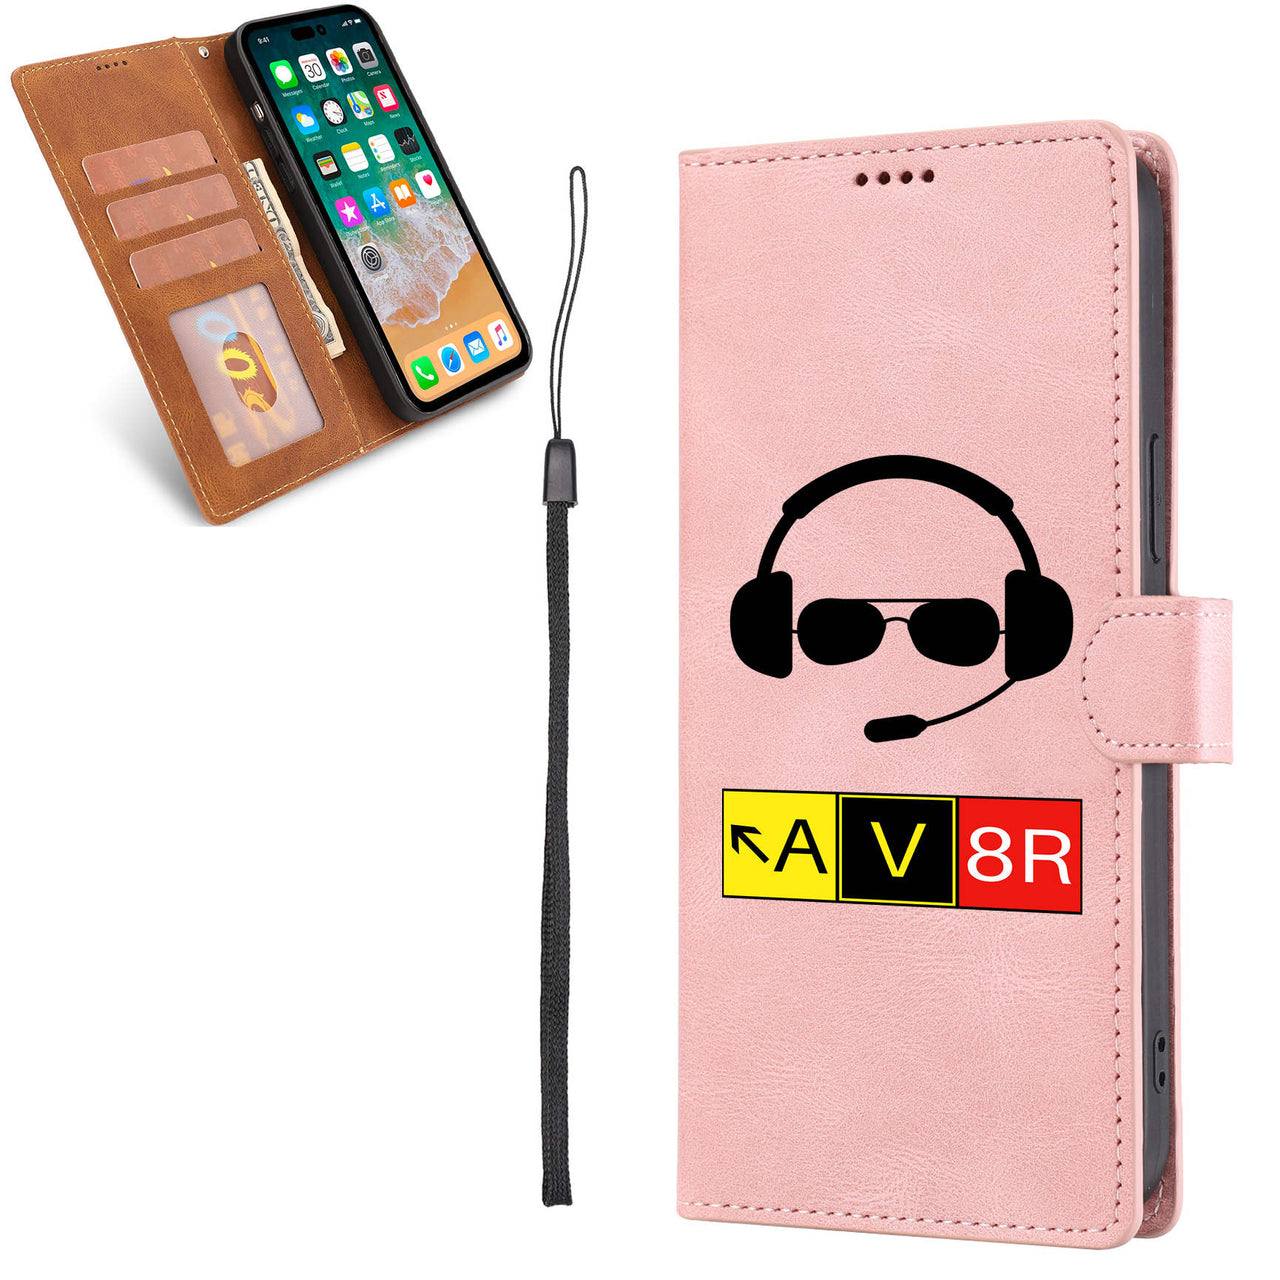 AV8R 2 Designed Leather iPhone Cases